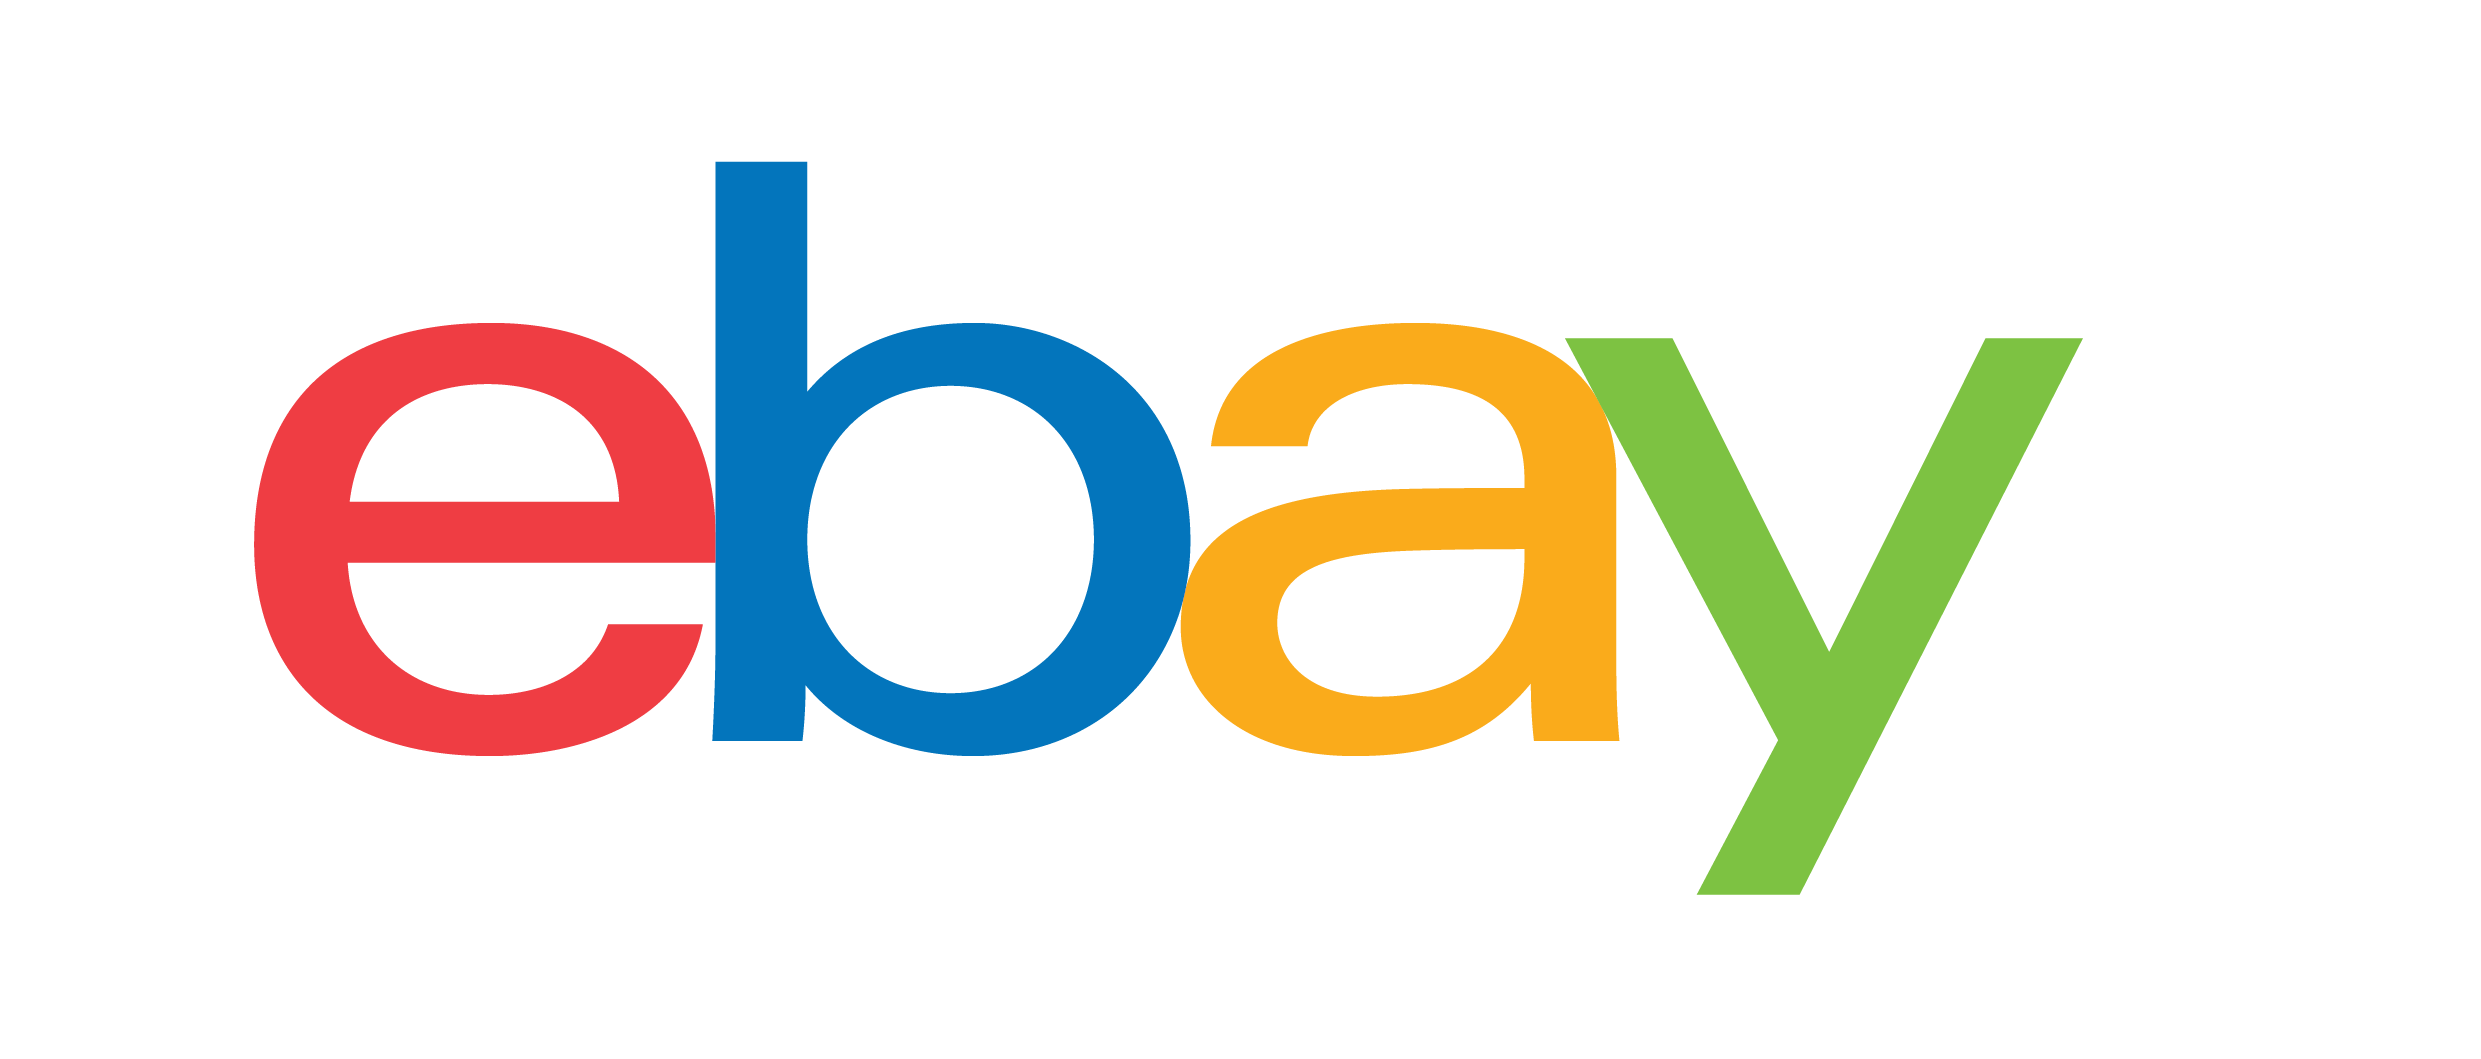 eBay 標誌。